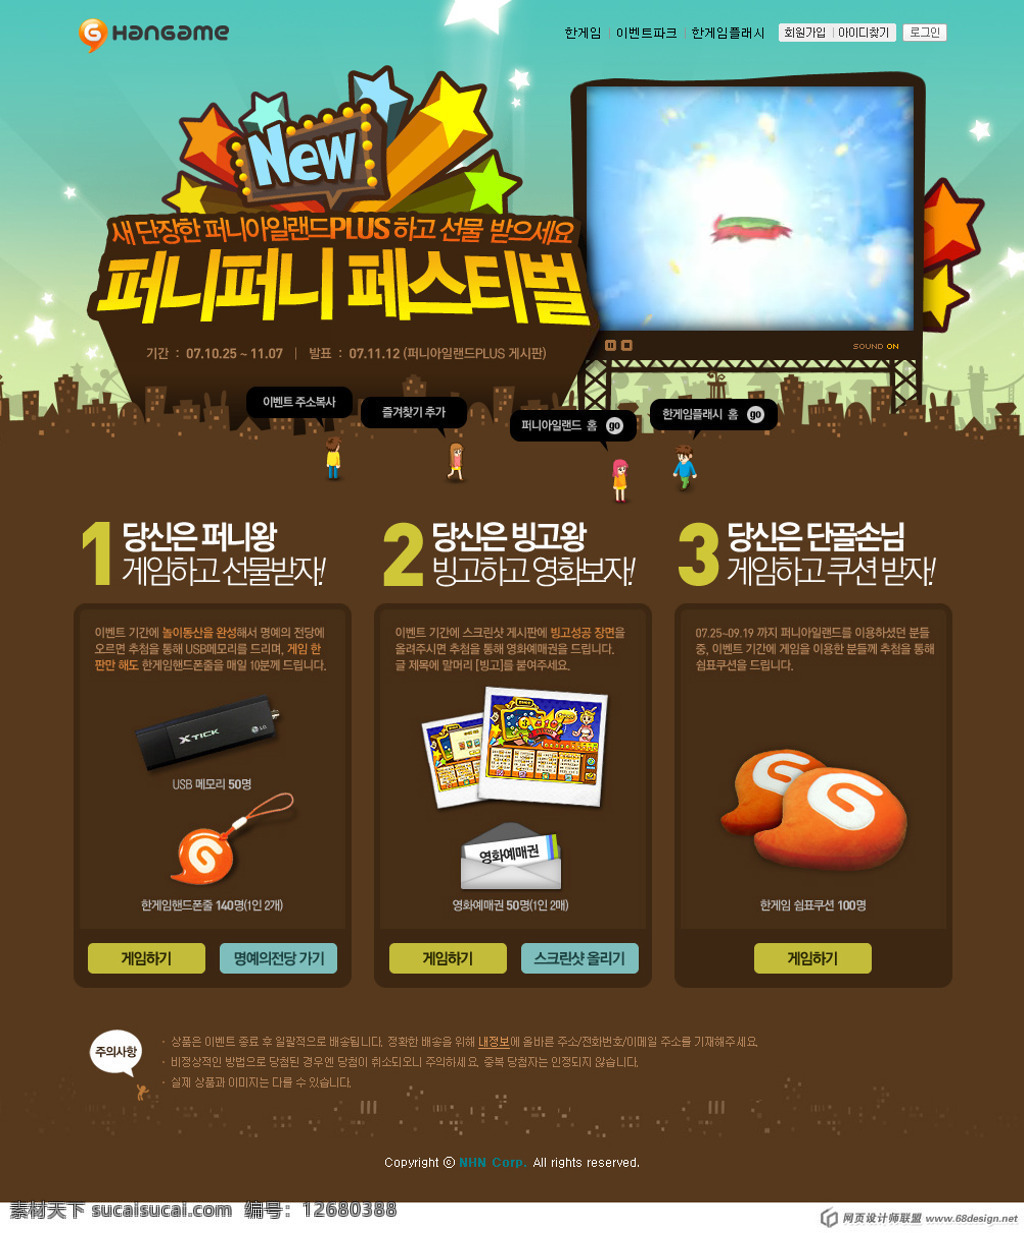 韩国 游戏网站 活动 页面 国外网页设计 韩国网页模板 韩国网页设计 韩国购物网站 网页 海报 网站活动页面 其他海报设计